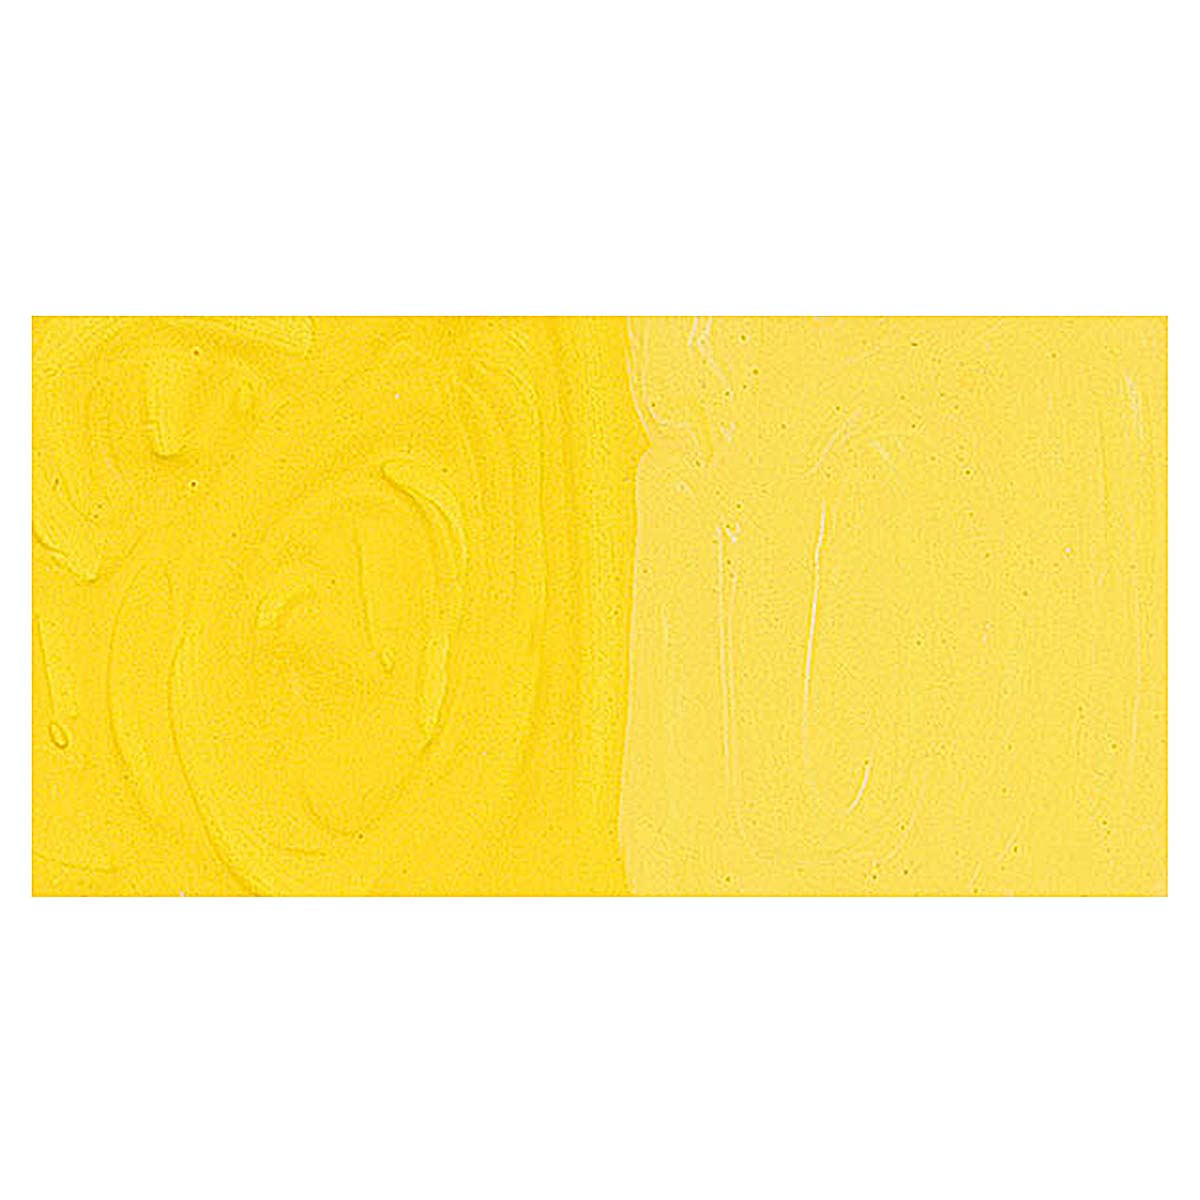 PEBEO Studio Gouache 100ml Primary Yellow